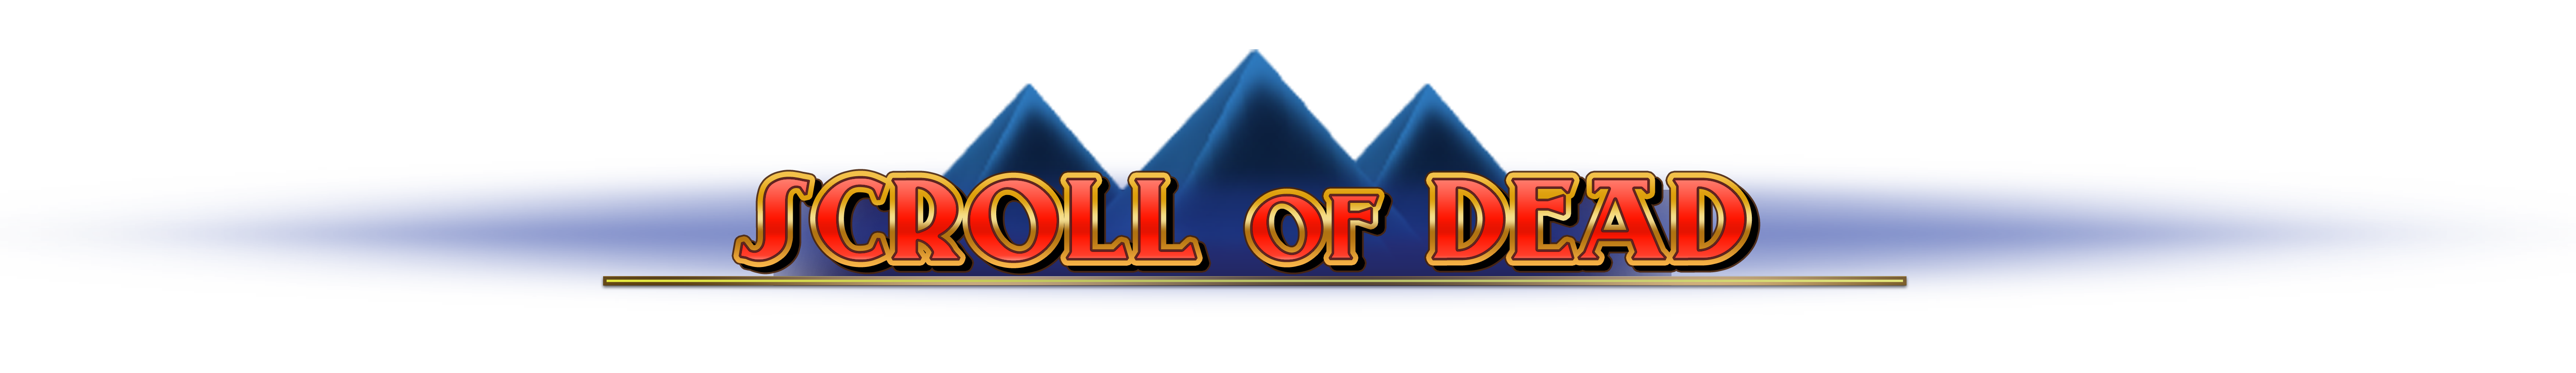 scroll of dead slot logo